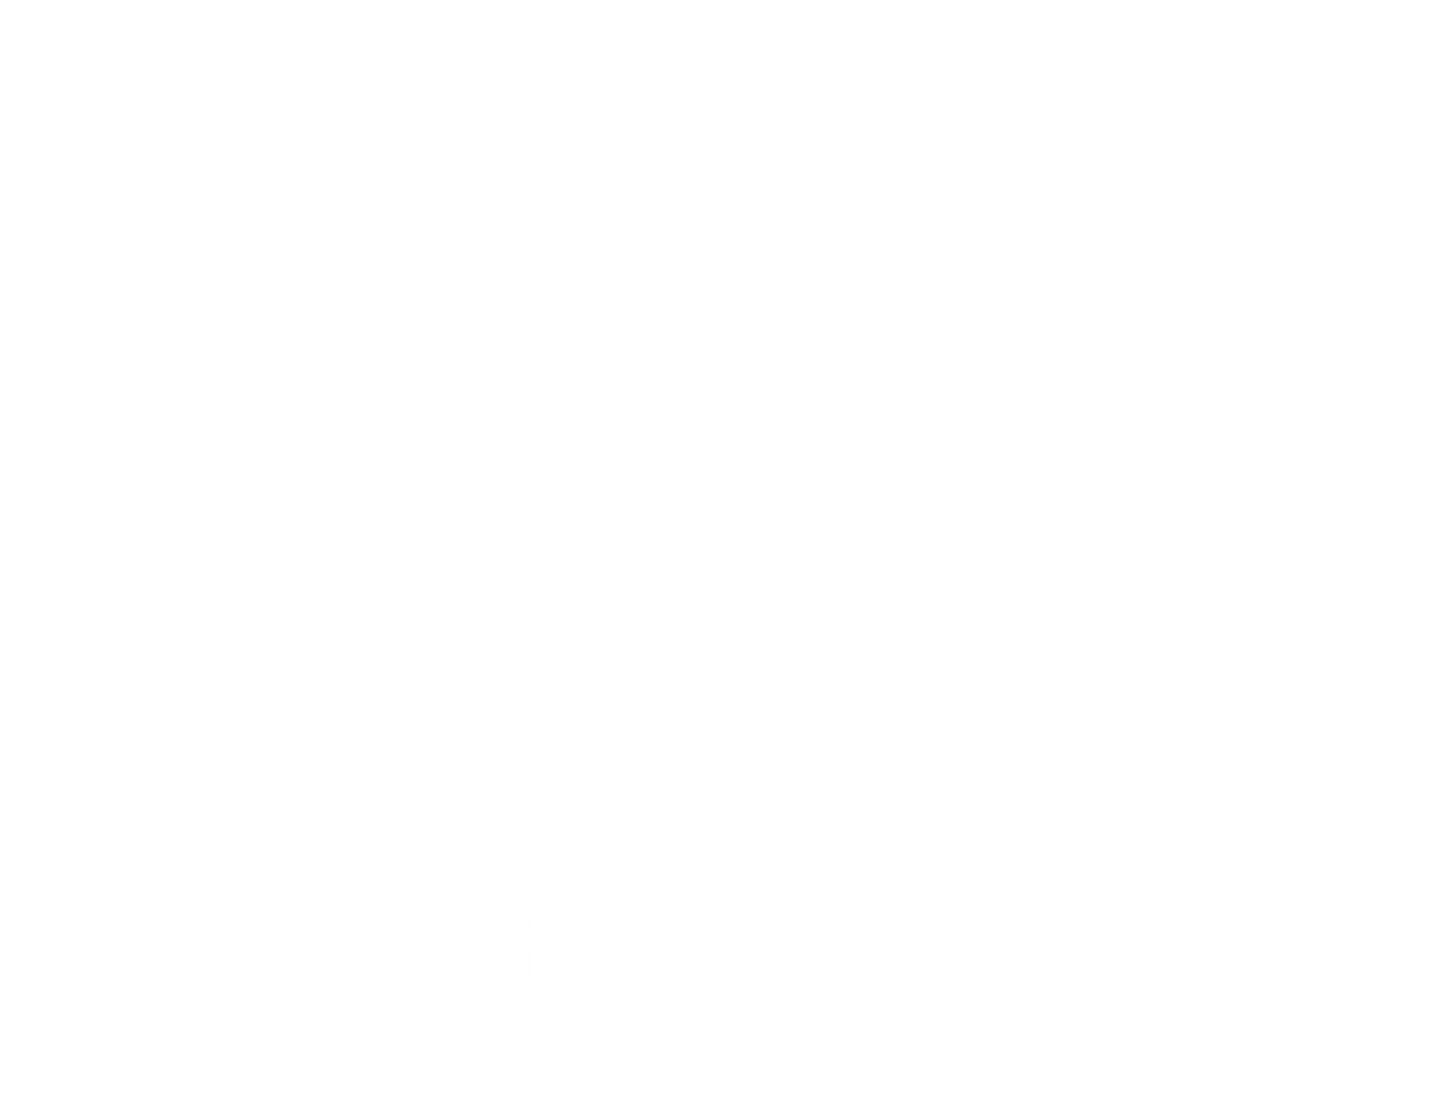 Passport Culinary